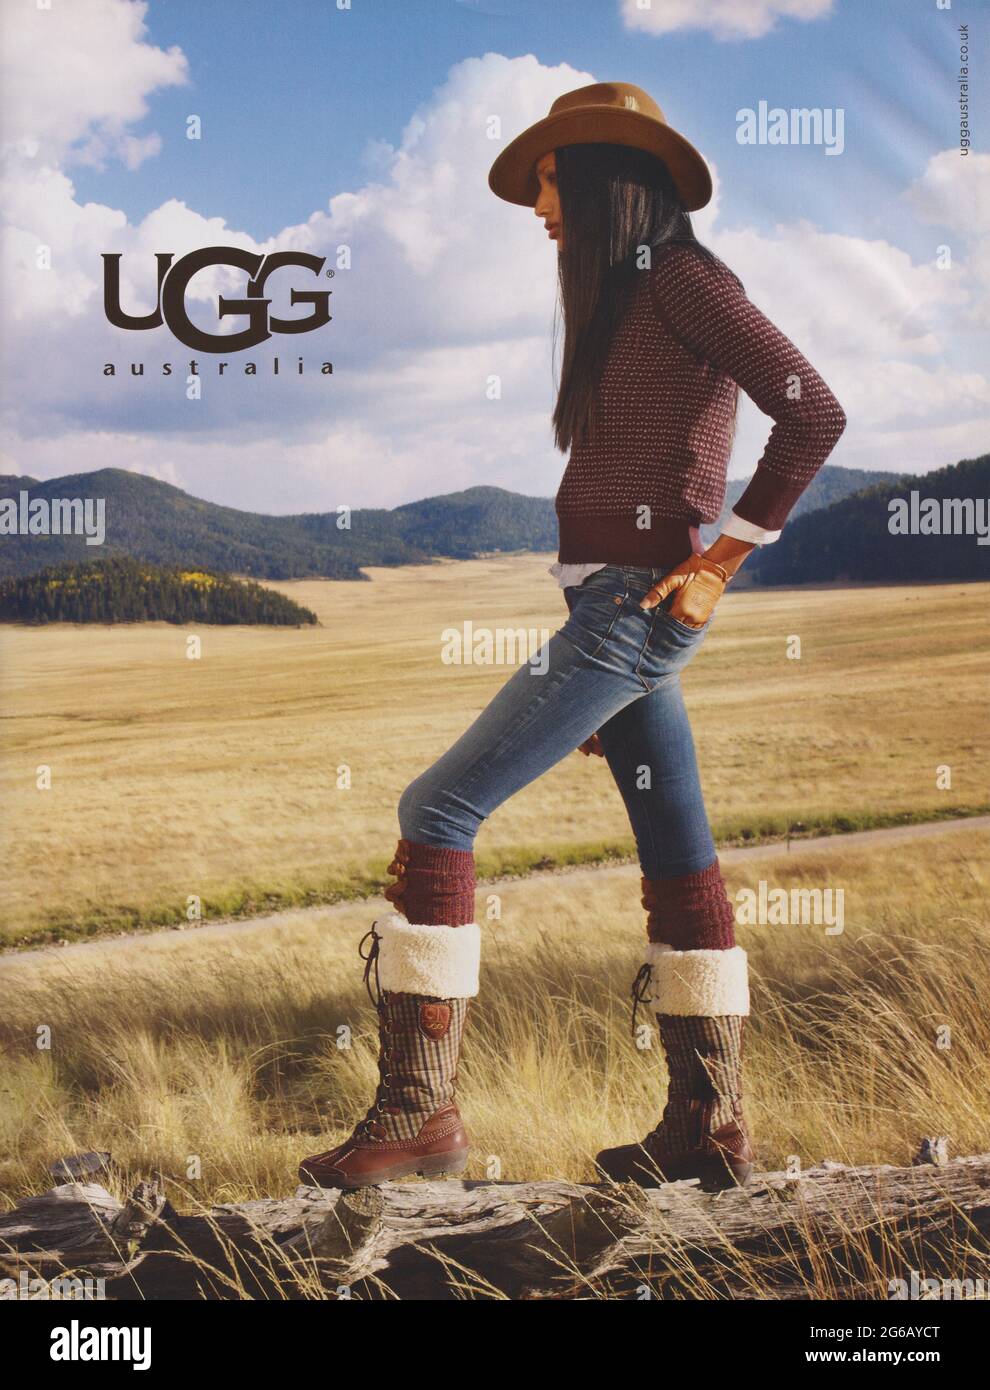 Affiche publicitaire de l'Australie d'UGG fashion house en version papier  du magazine de l'année 2011, une publicité, une publicité à partir d' Australie d'UGG créatifs 2010s Photo Stock - Alamy